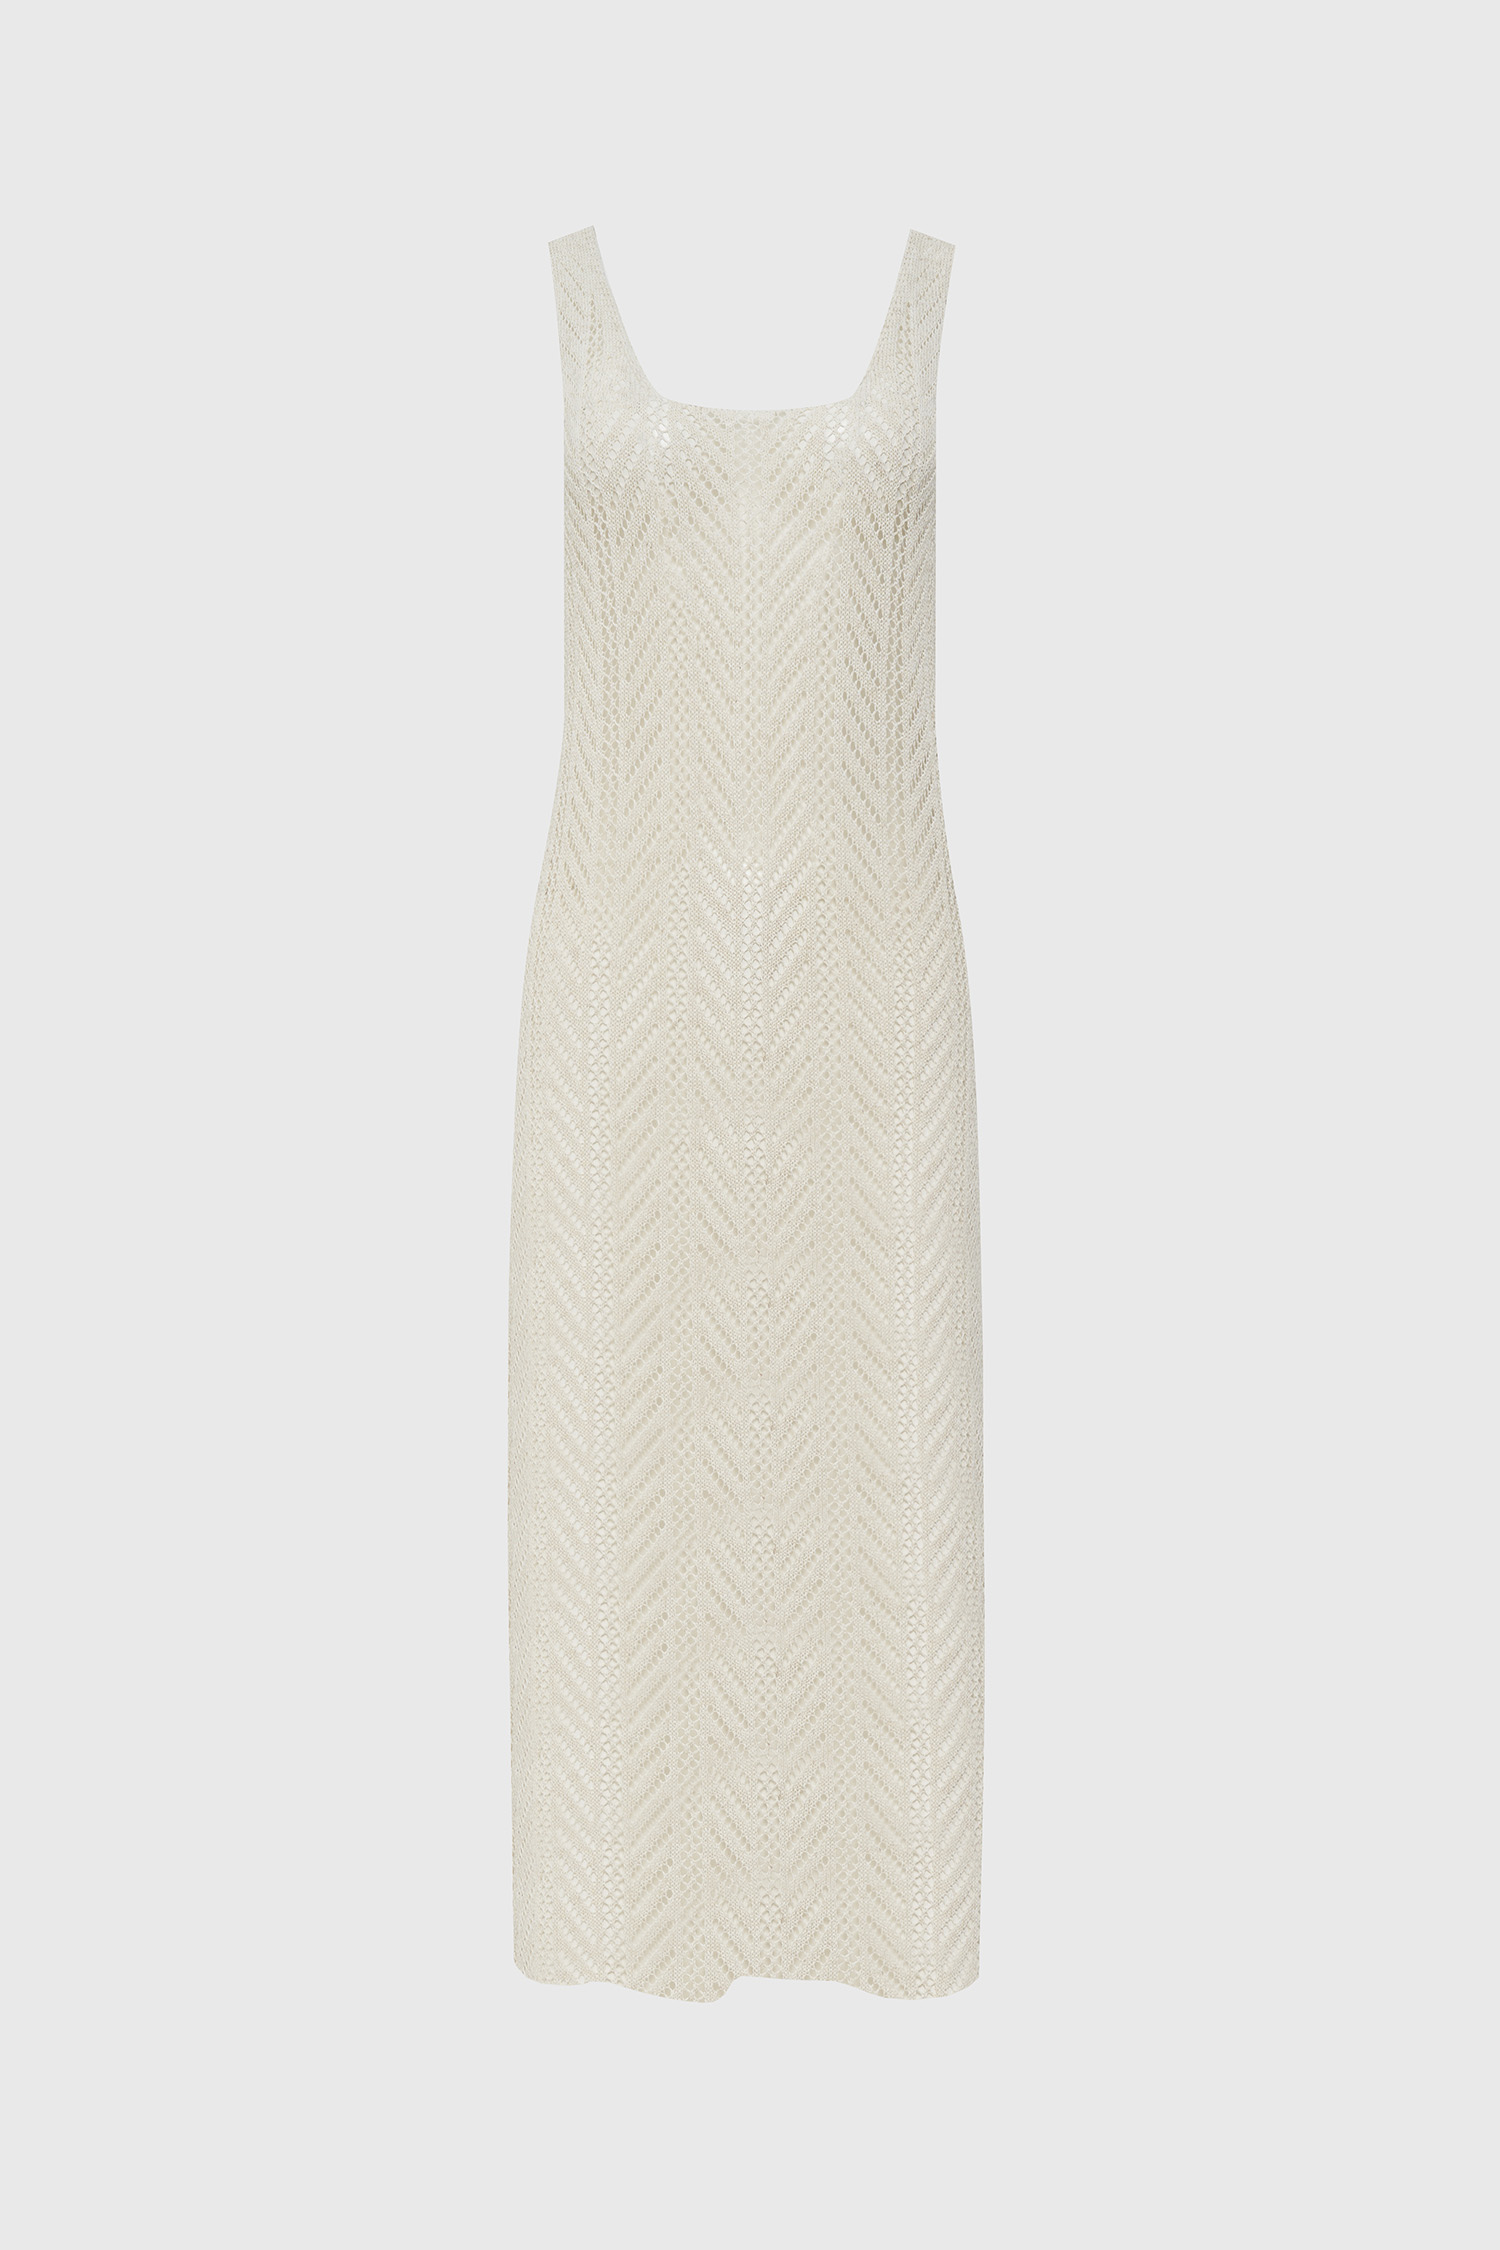 Netting pattern layered slit long dress - ivory